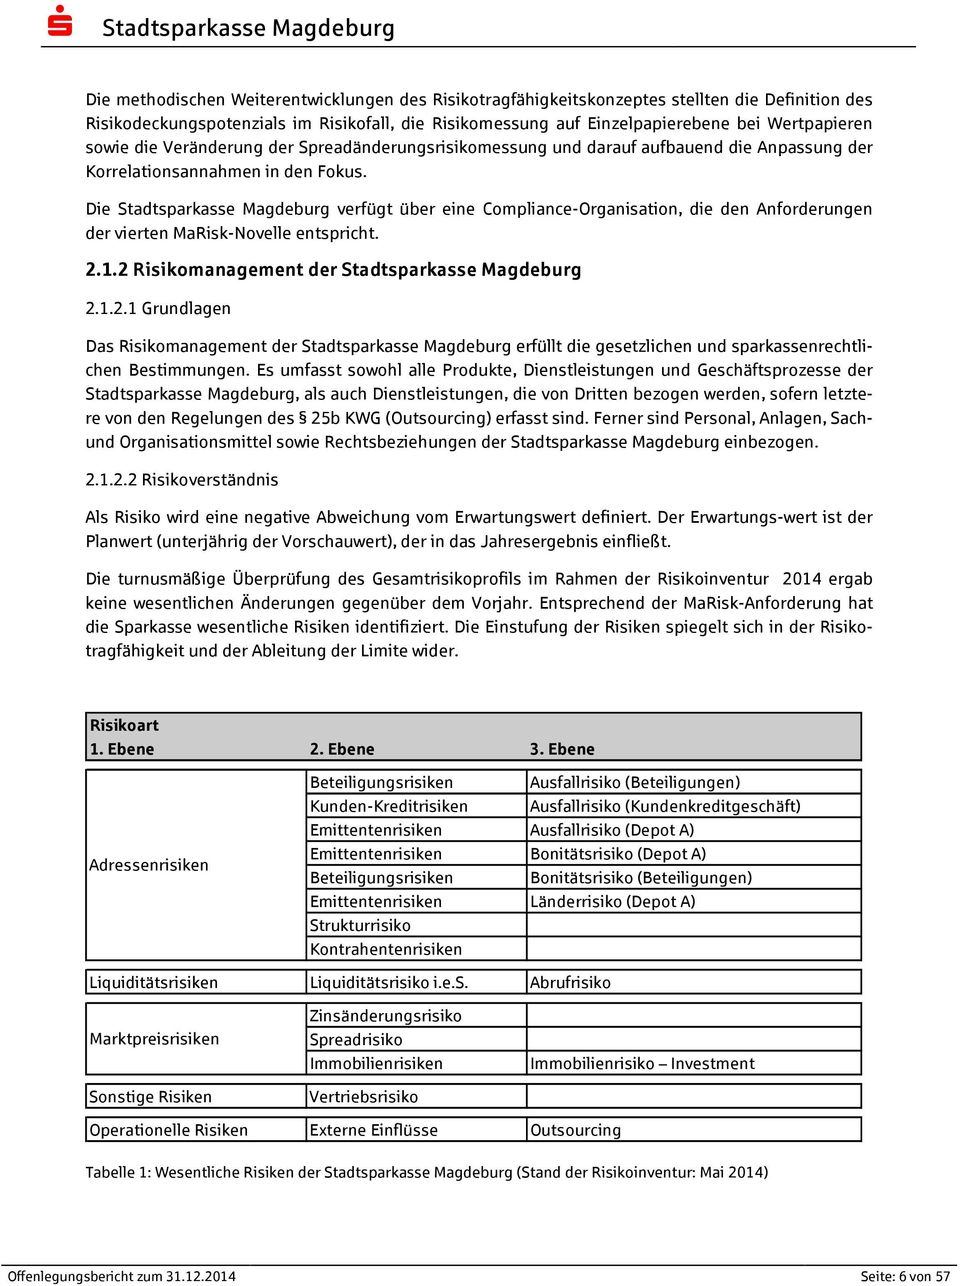 Die Stadtsparkasse Magdeburg verfügt über eine Compliance-Organisation, die den Anforderungen der vierten MaRisk-Novelle entspricht. 2.